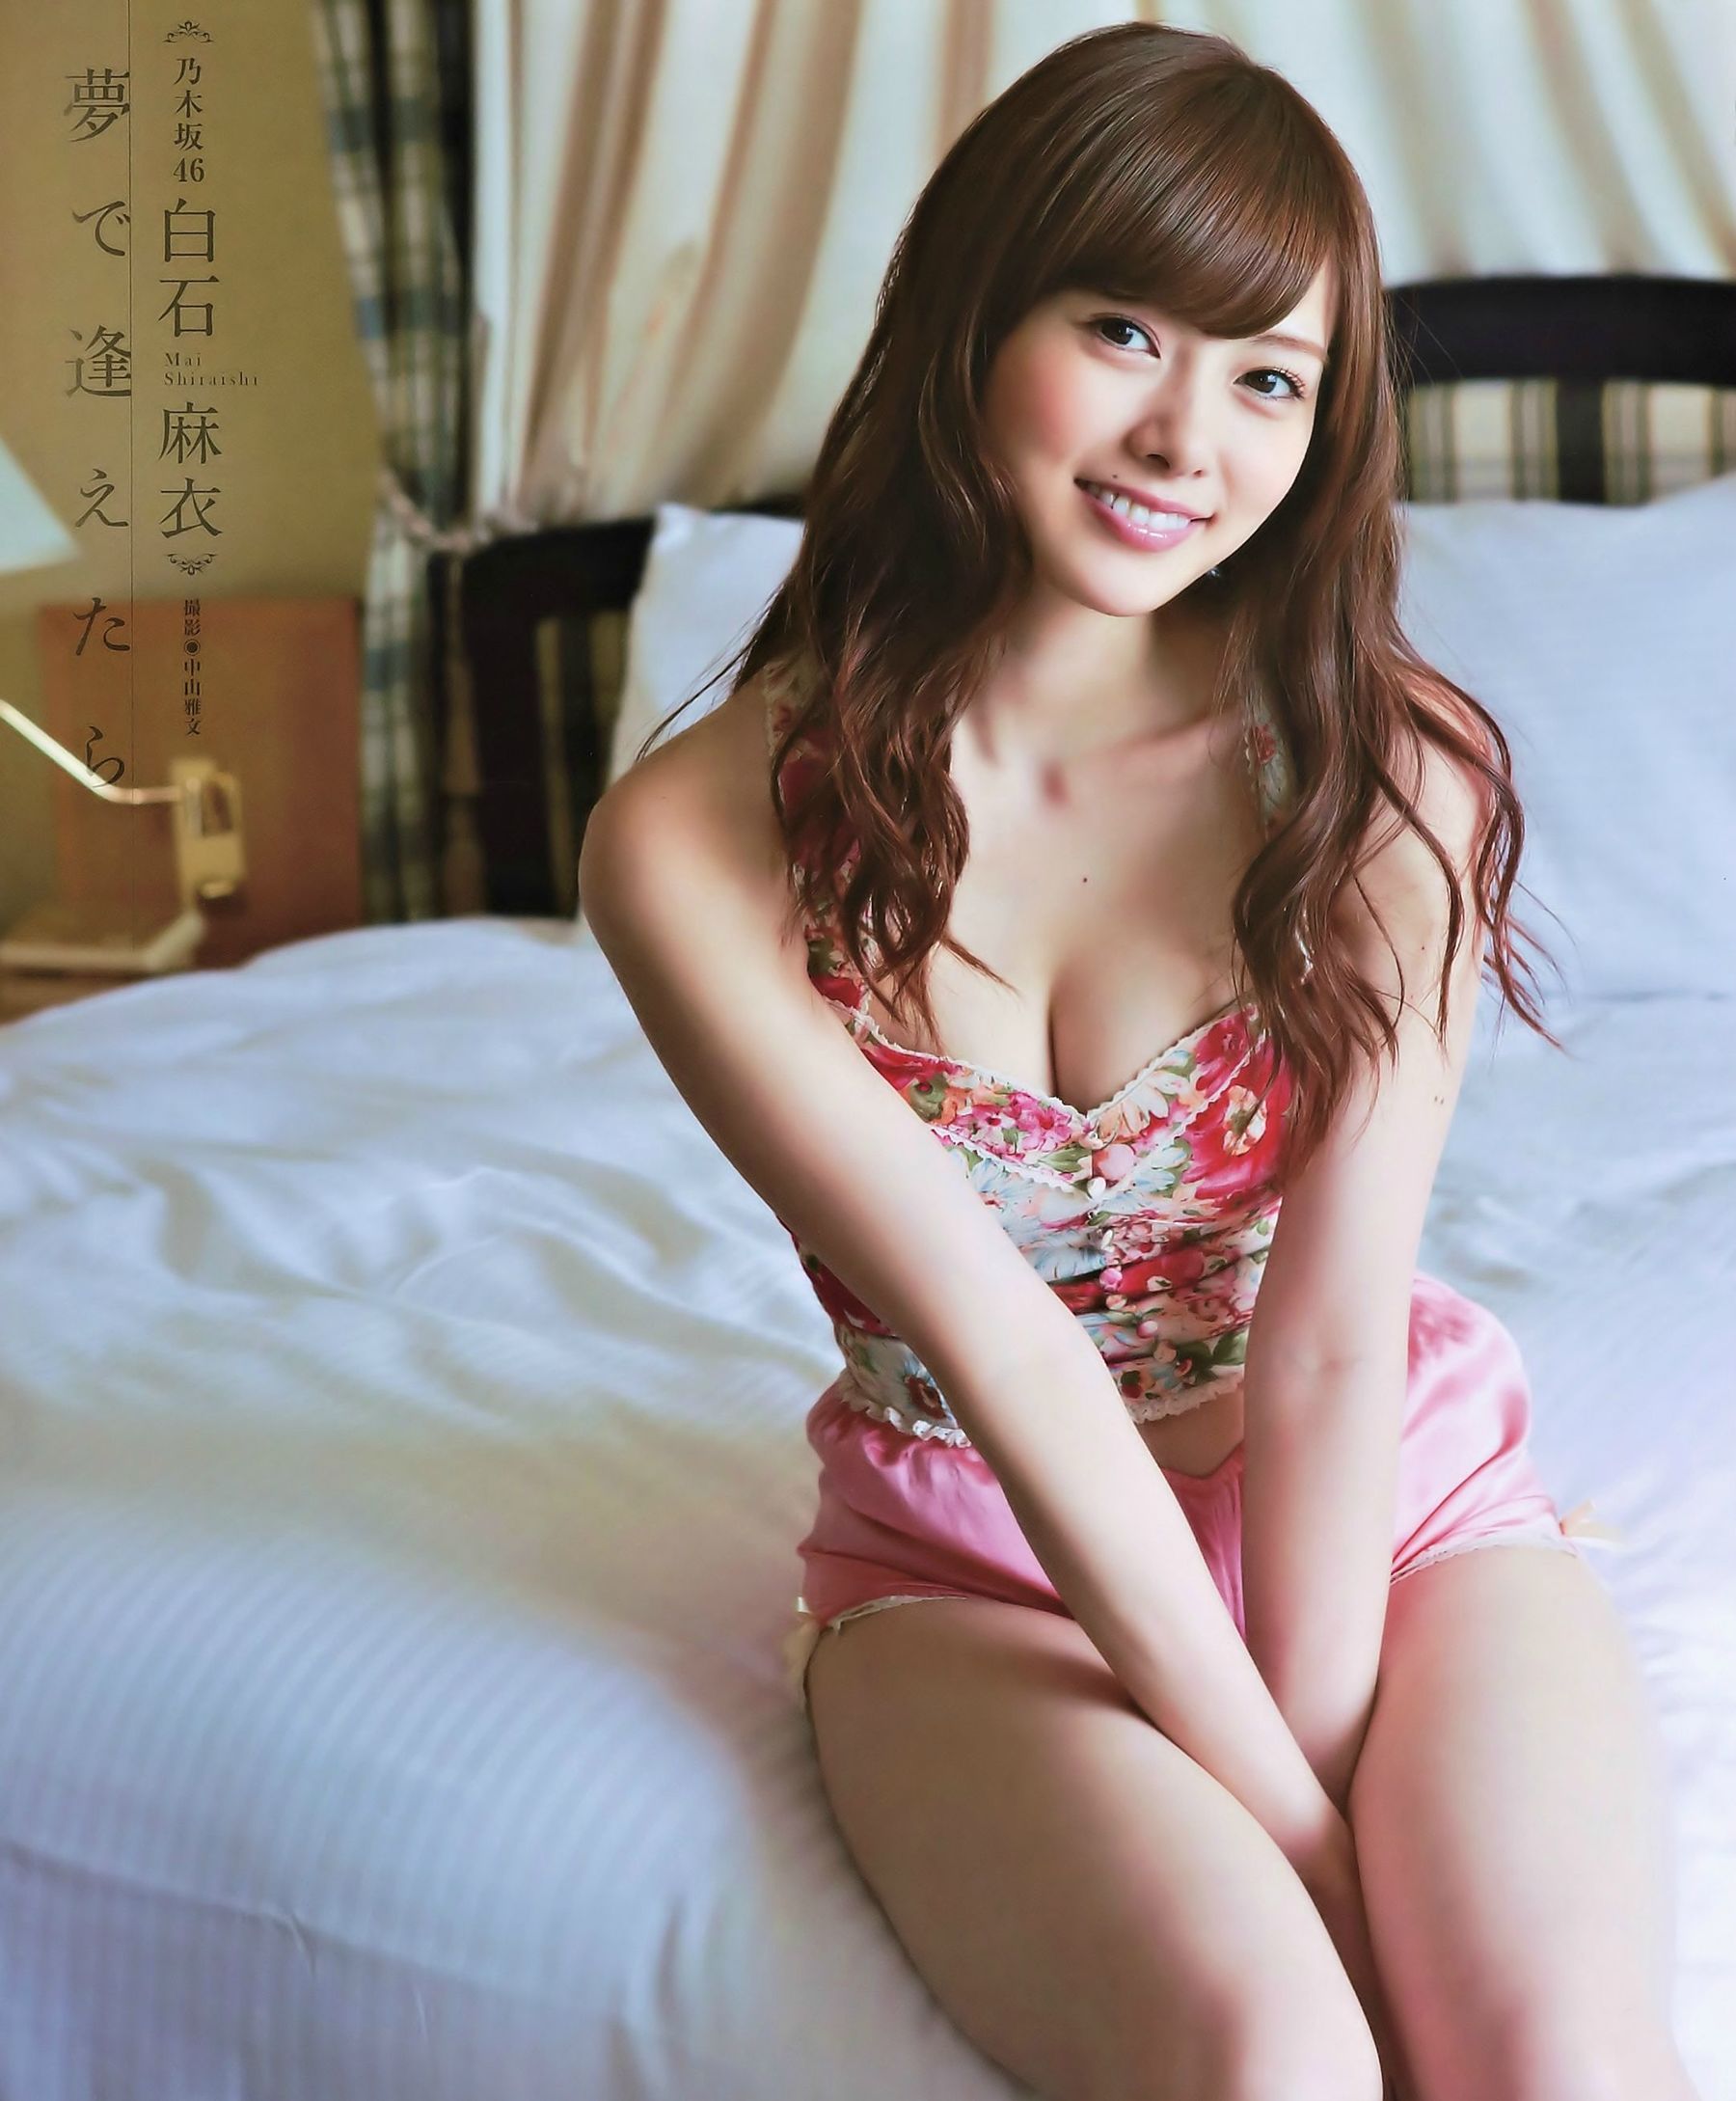 [网络美女]气质日本女星:白石麻衣高品质壁纸图片珍藏版(16P)